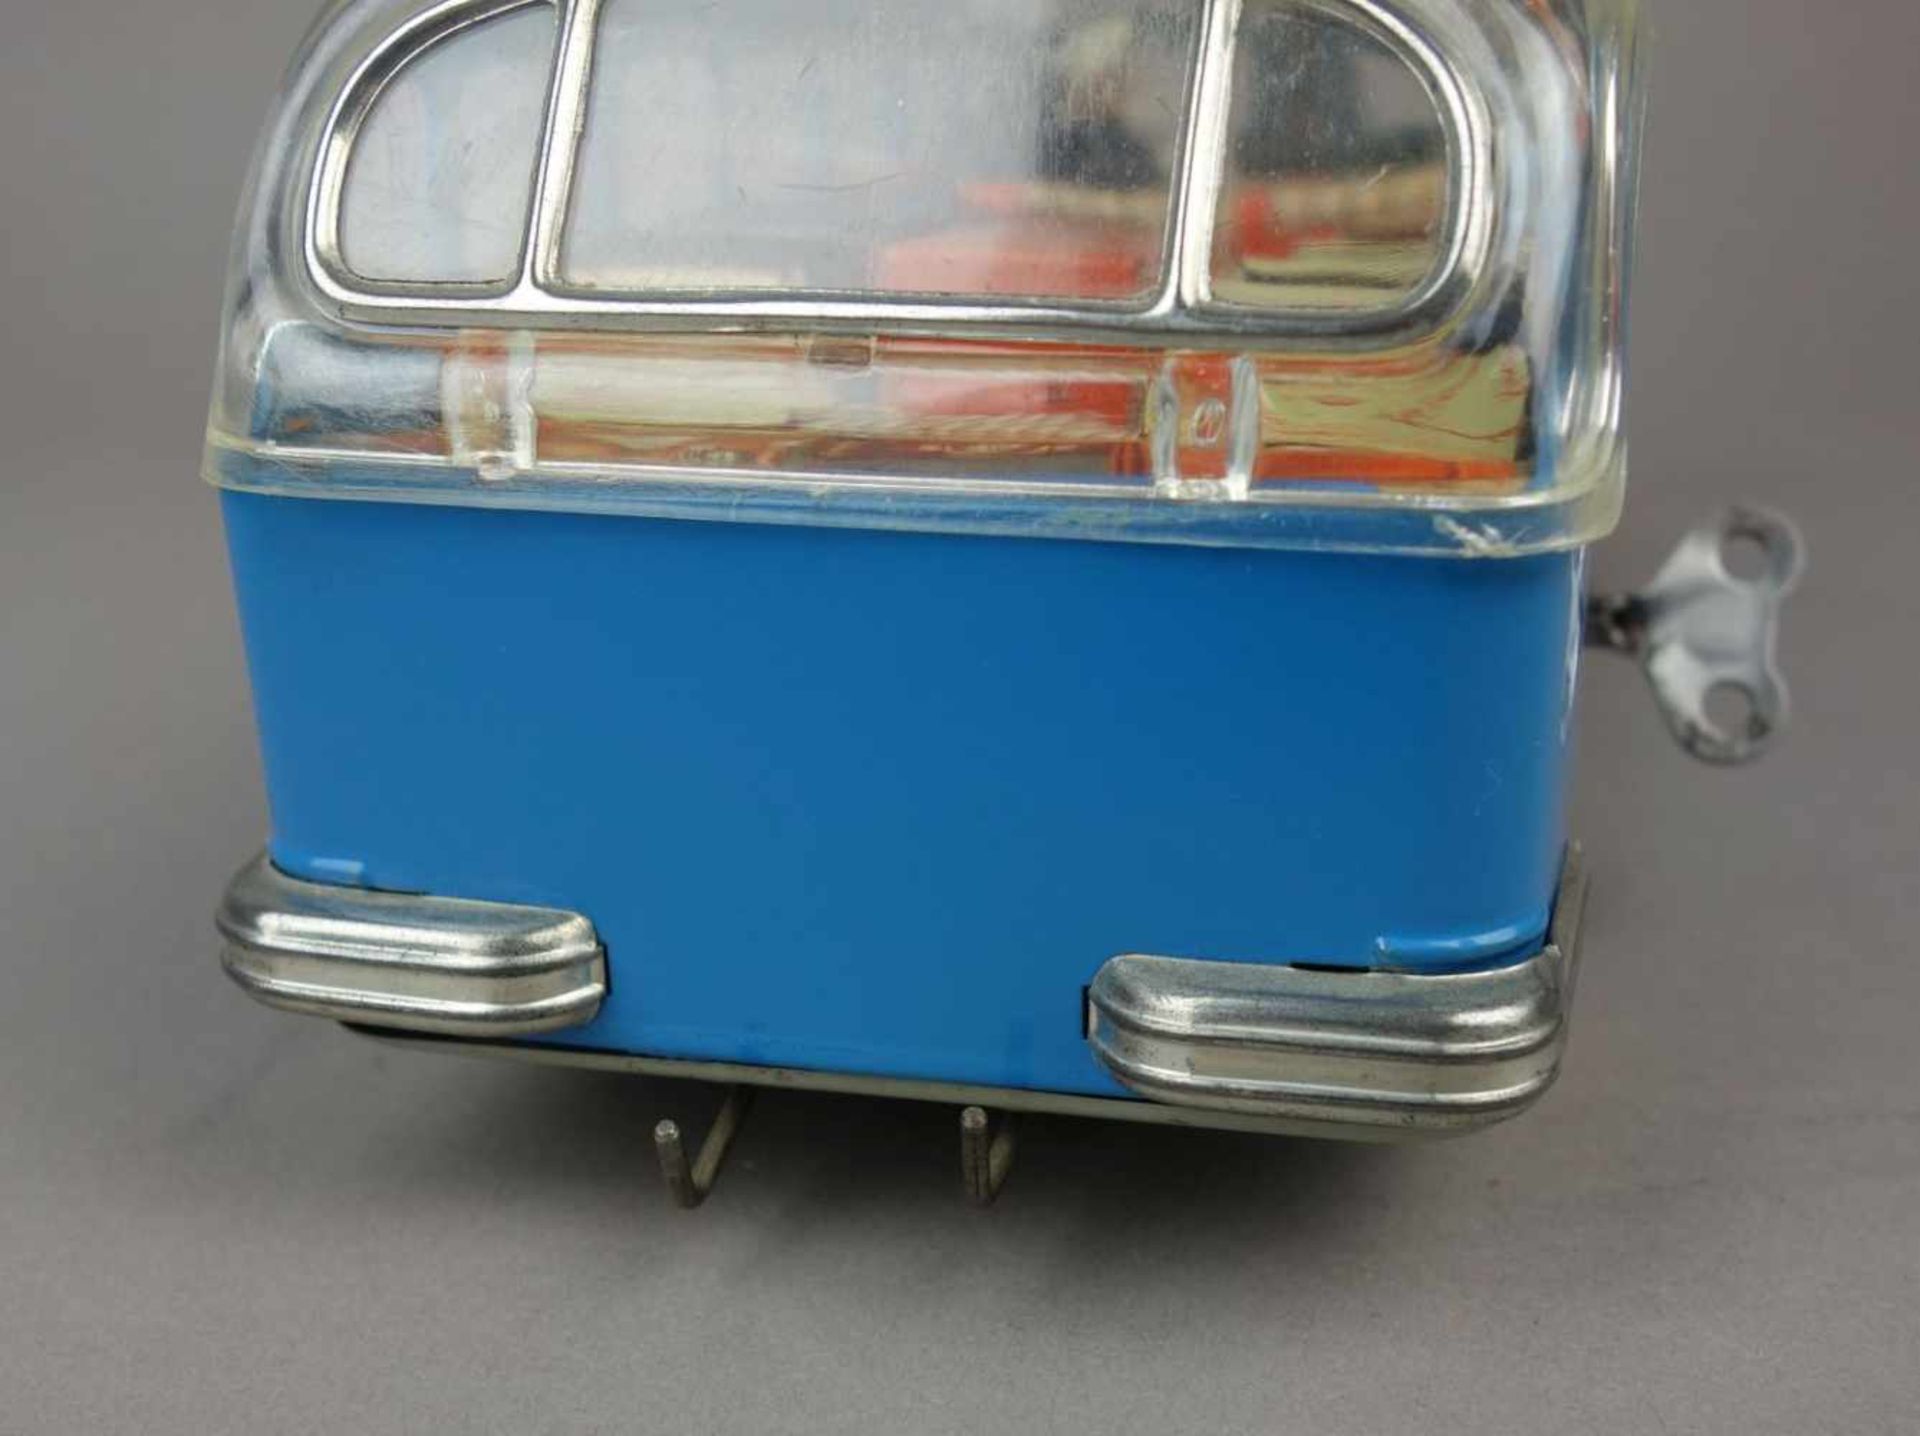 BLECHSPIELZEUG FAHRZEUG: SETRA REISEBUS / BUS / tin toy bus, um 1960, Blech und Plastik, farbig - Bild 7 aus 8